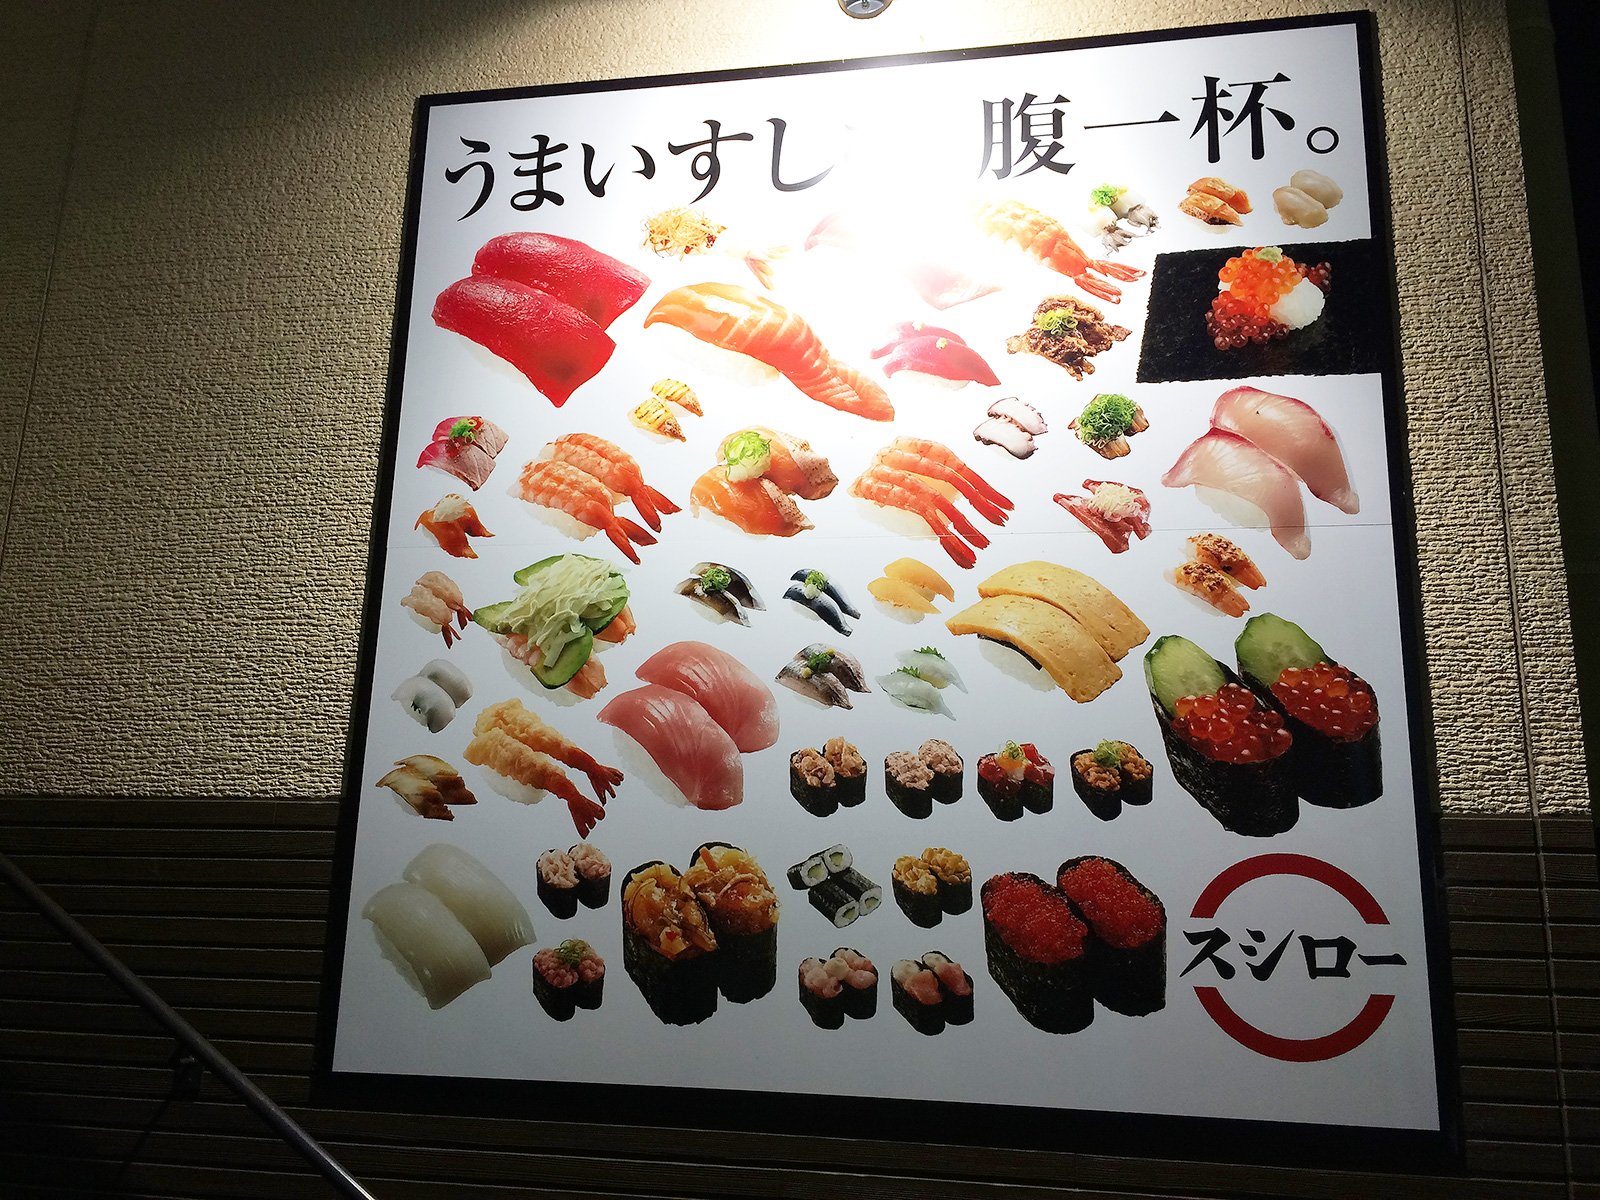 「スシロー清須古城店」の天然炙りサーモンとお寿司いろいろ @西枇杷島